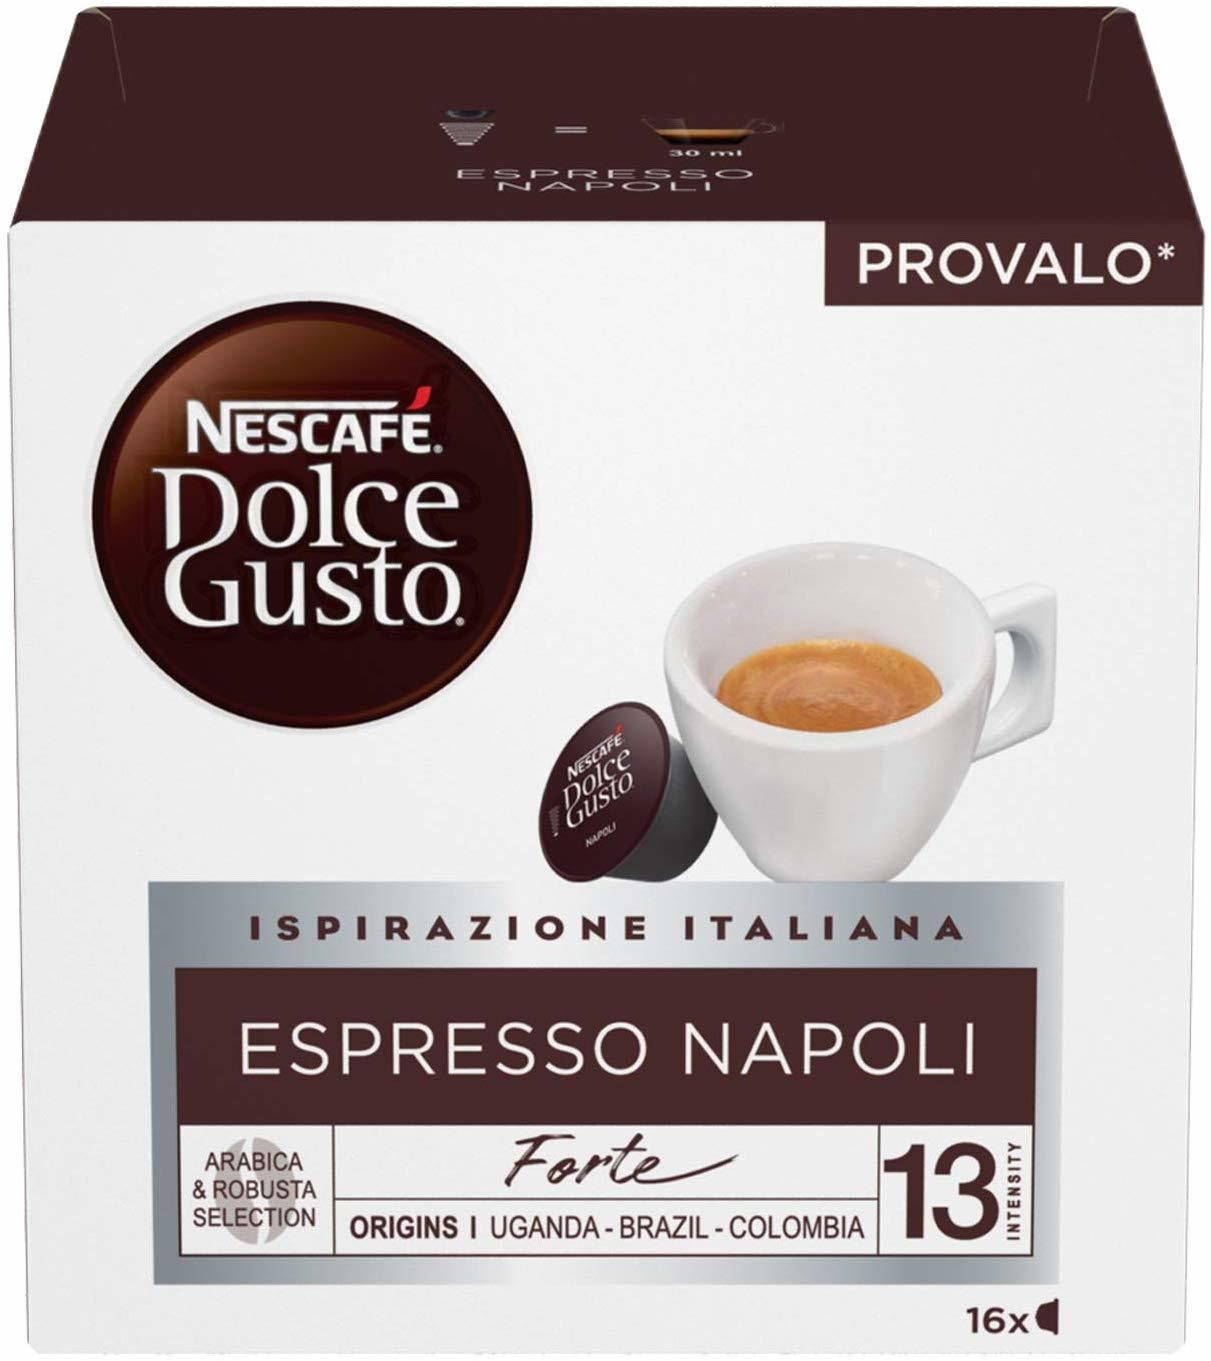 Nestle' Capsule Dolce Gusto Espresso Napoli Nescafe